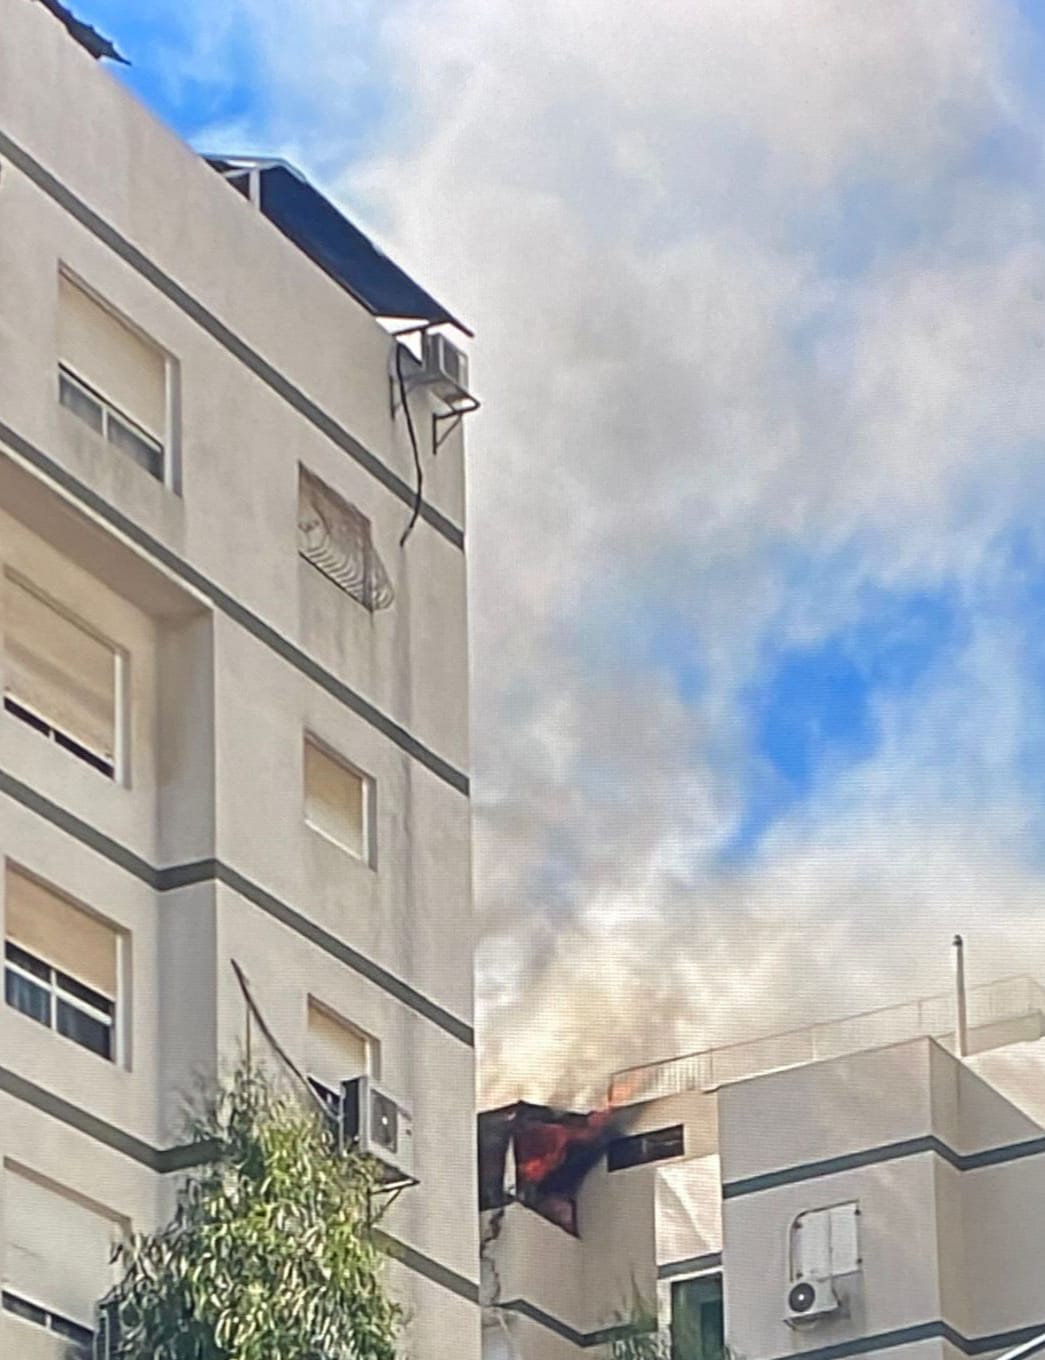 اللد: حريق في شقّة على الطابق التاسع والاطفائية تهرع للمكان 